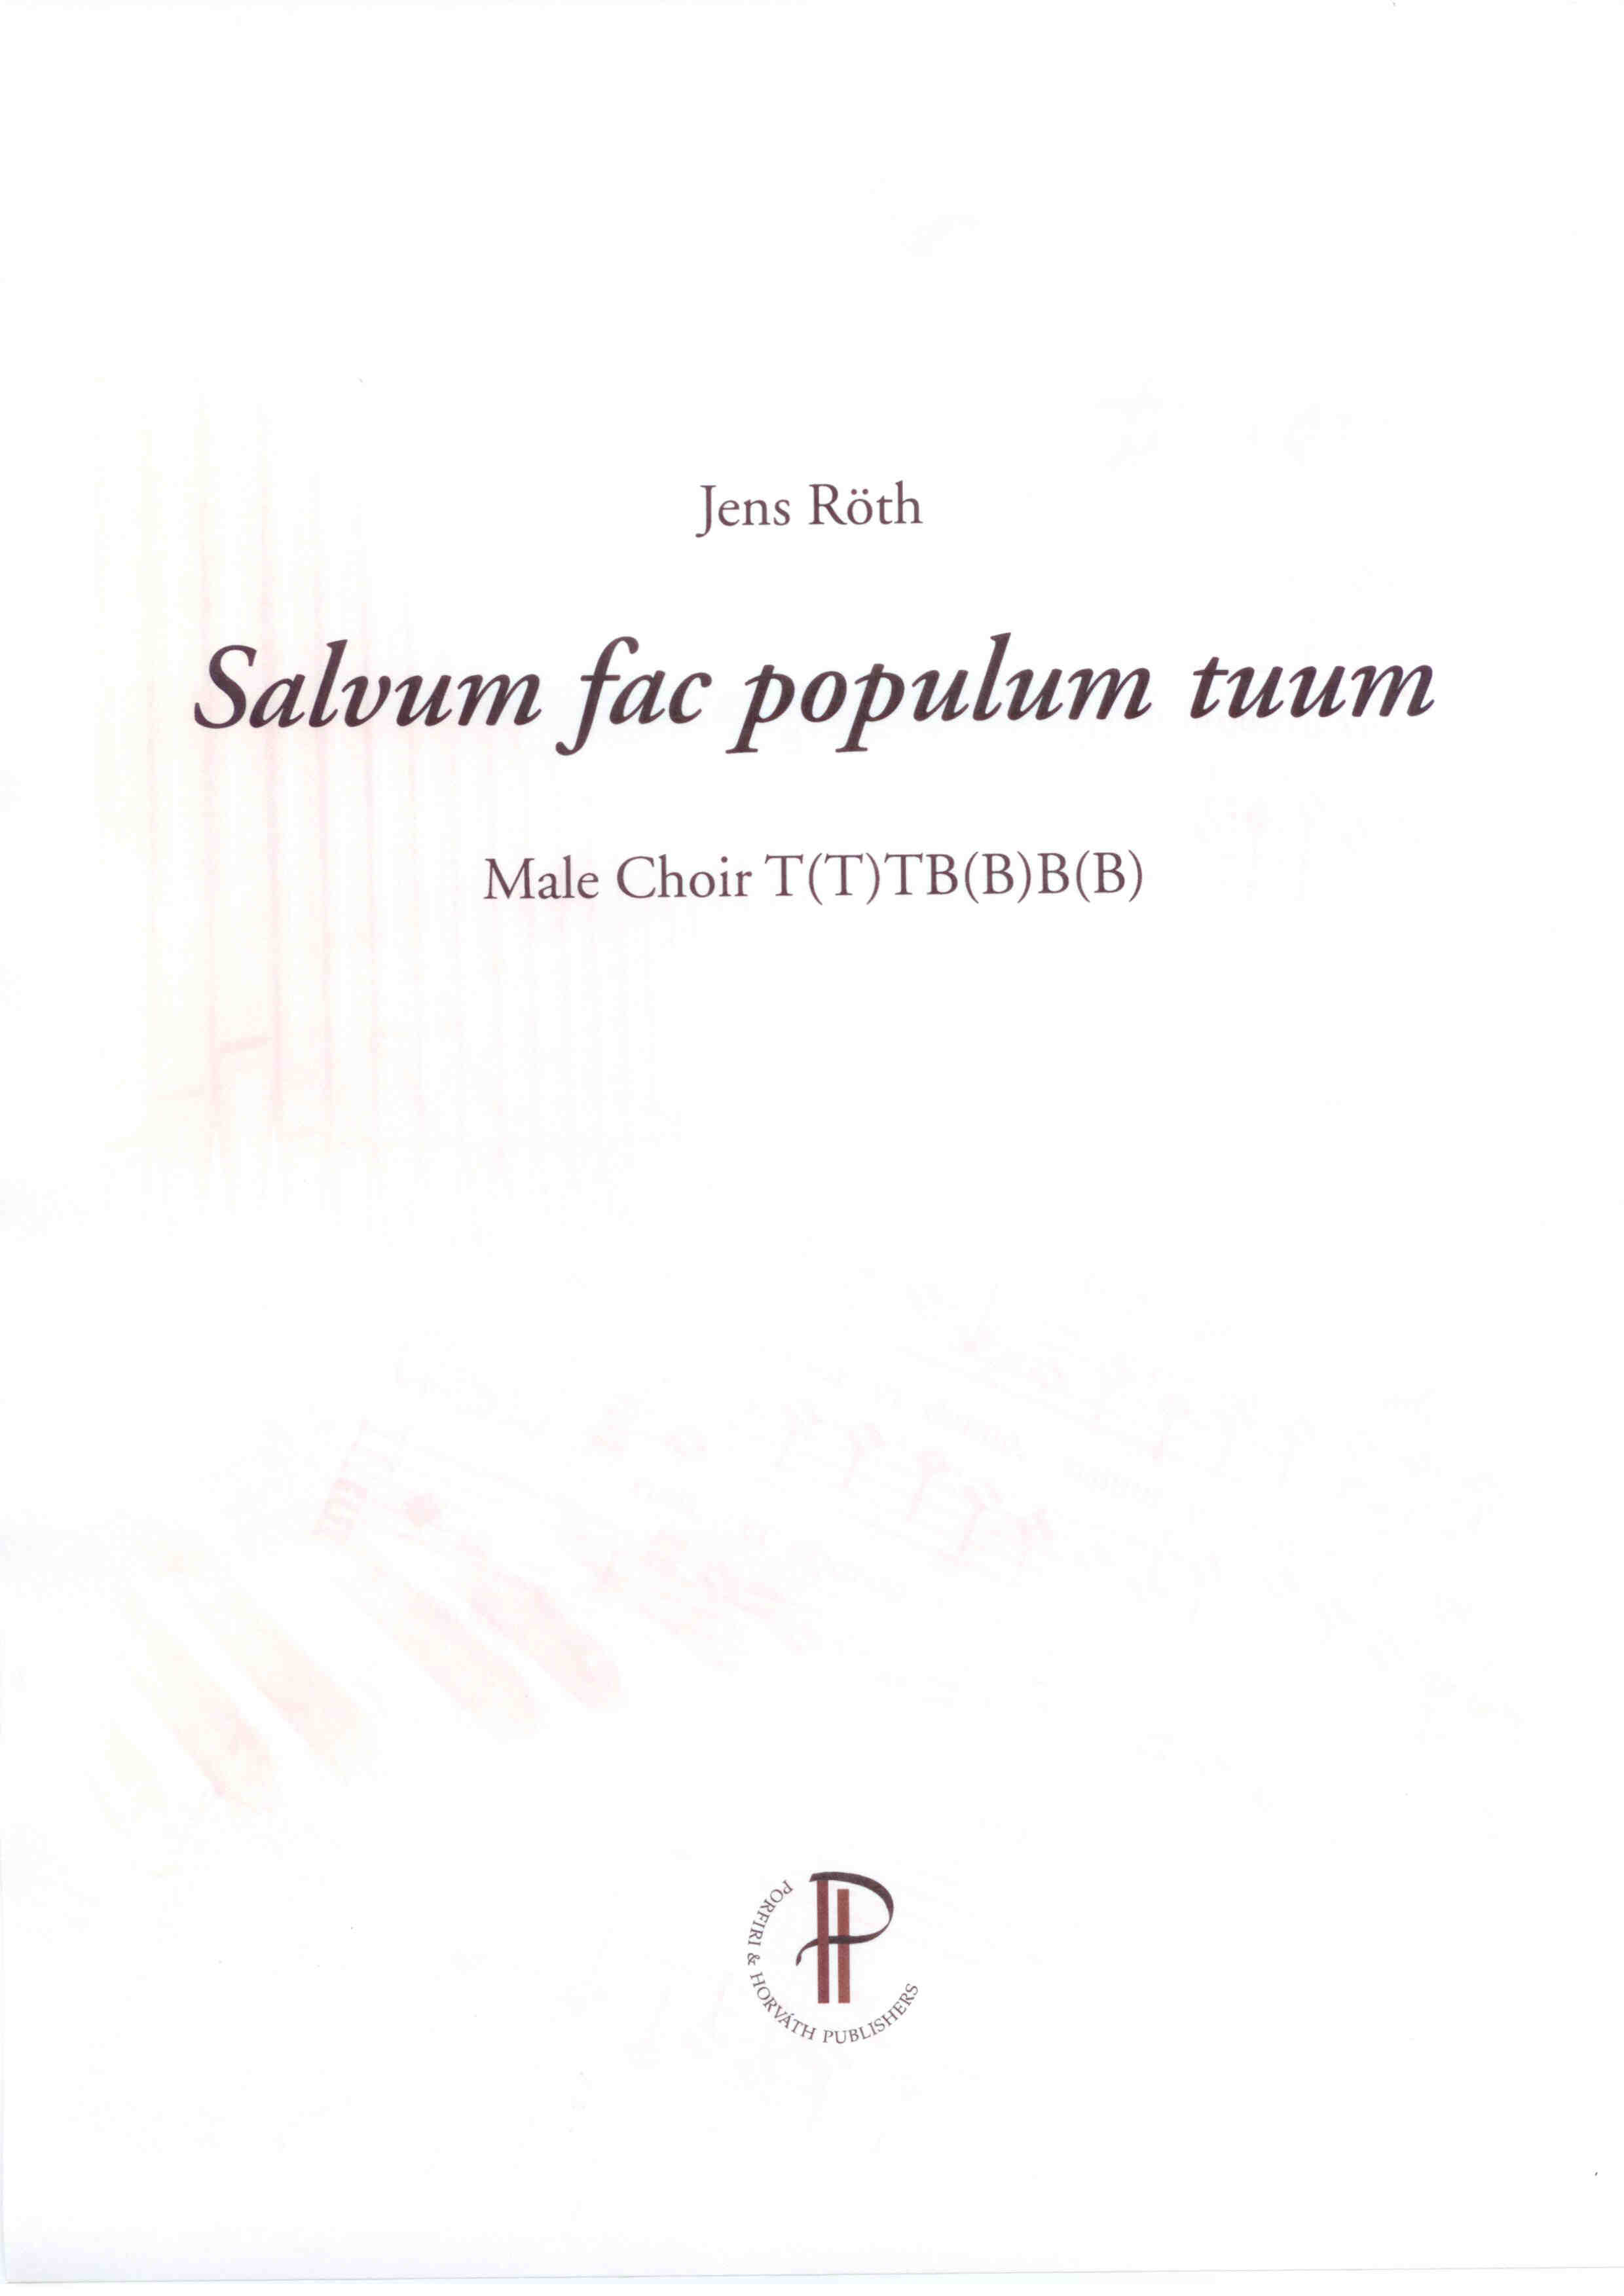 Salvum fac populum tuum - Show sample score